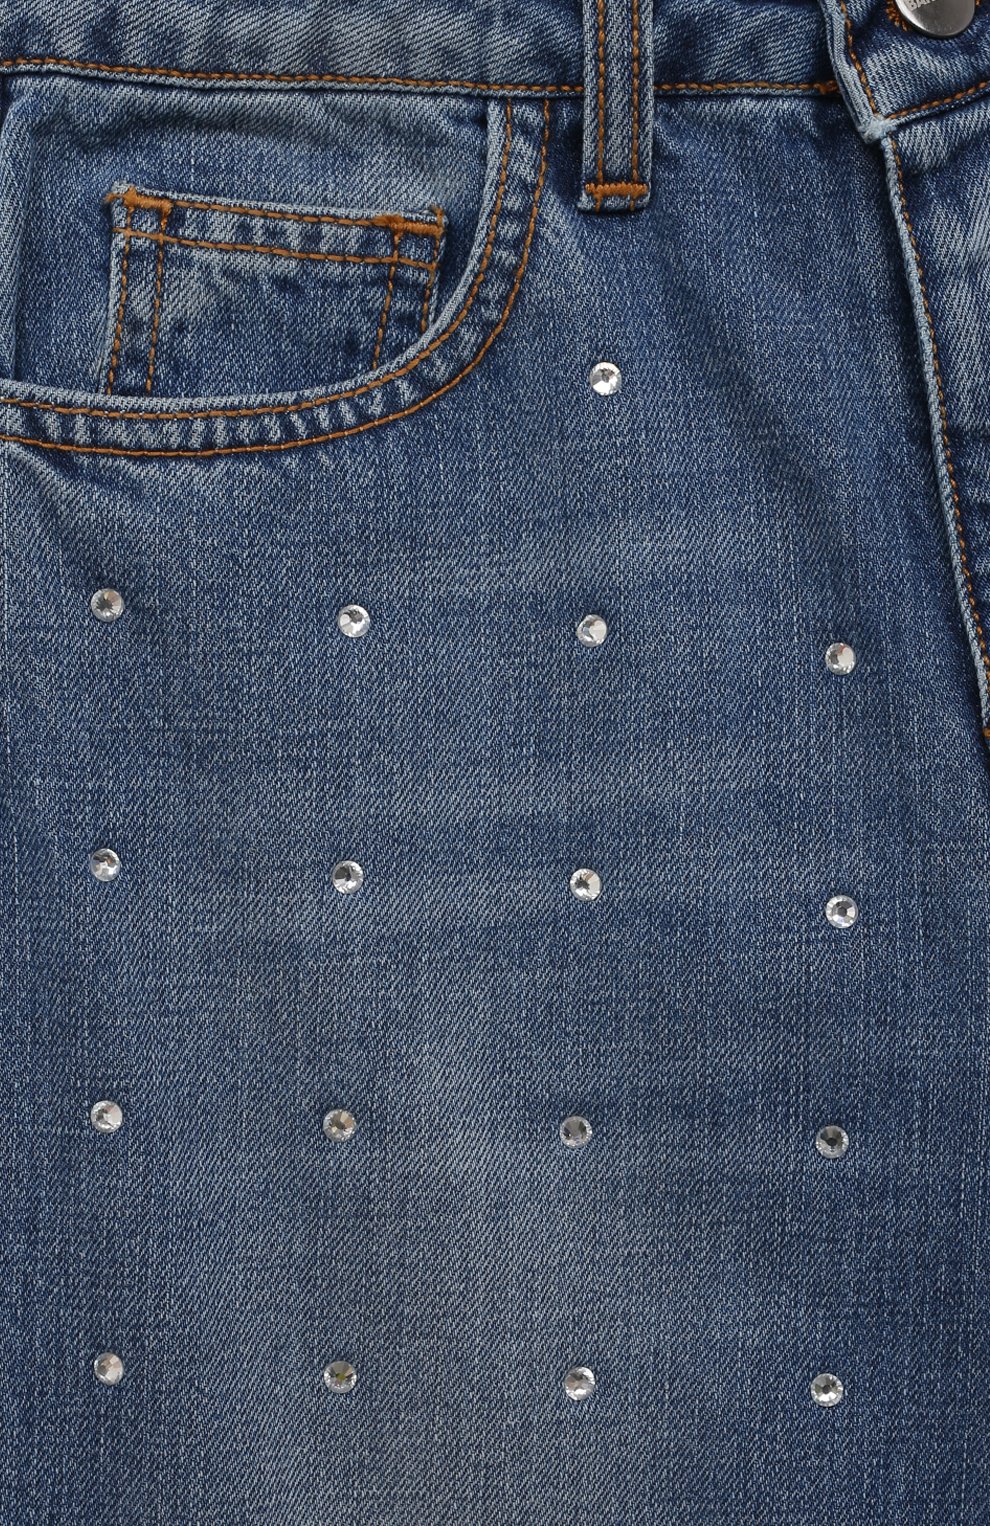 Декор одежды: Как украсить джинсы декоративными швами Sashiko